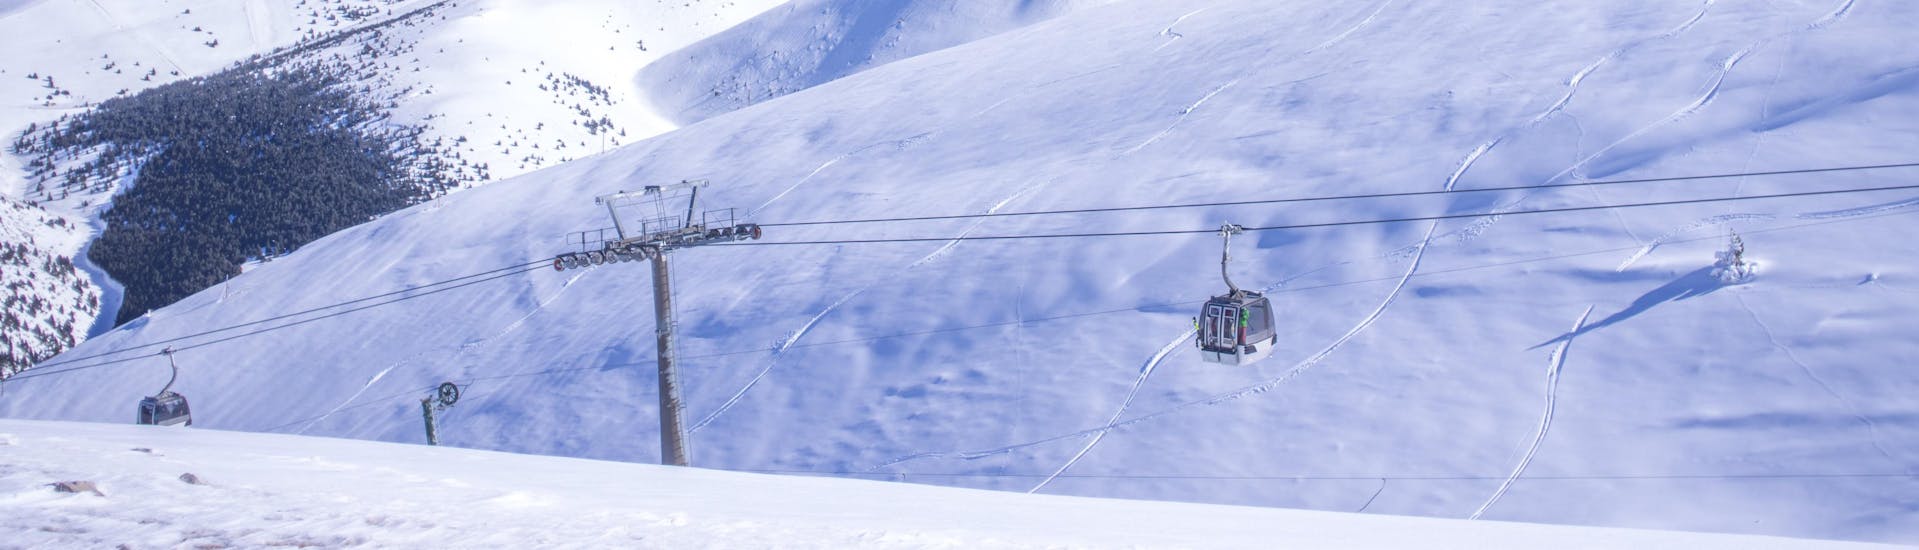 Ein Bild einer Gondel im katalanischen Skigebiet Masella, wo Besucher bei einer der örtlichen Skischulen einen Skikurs buchen können.